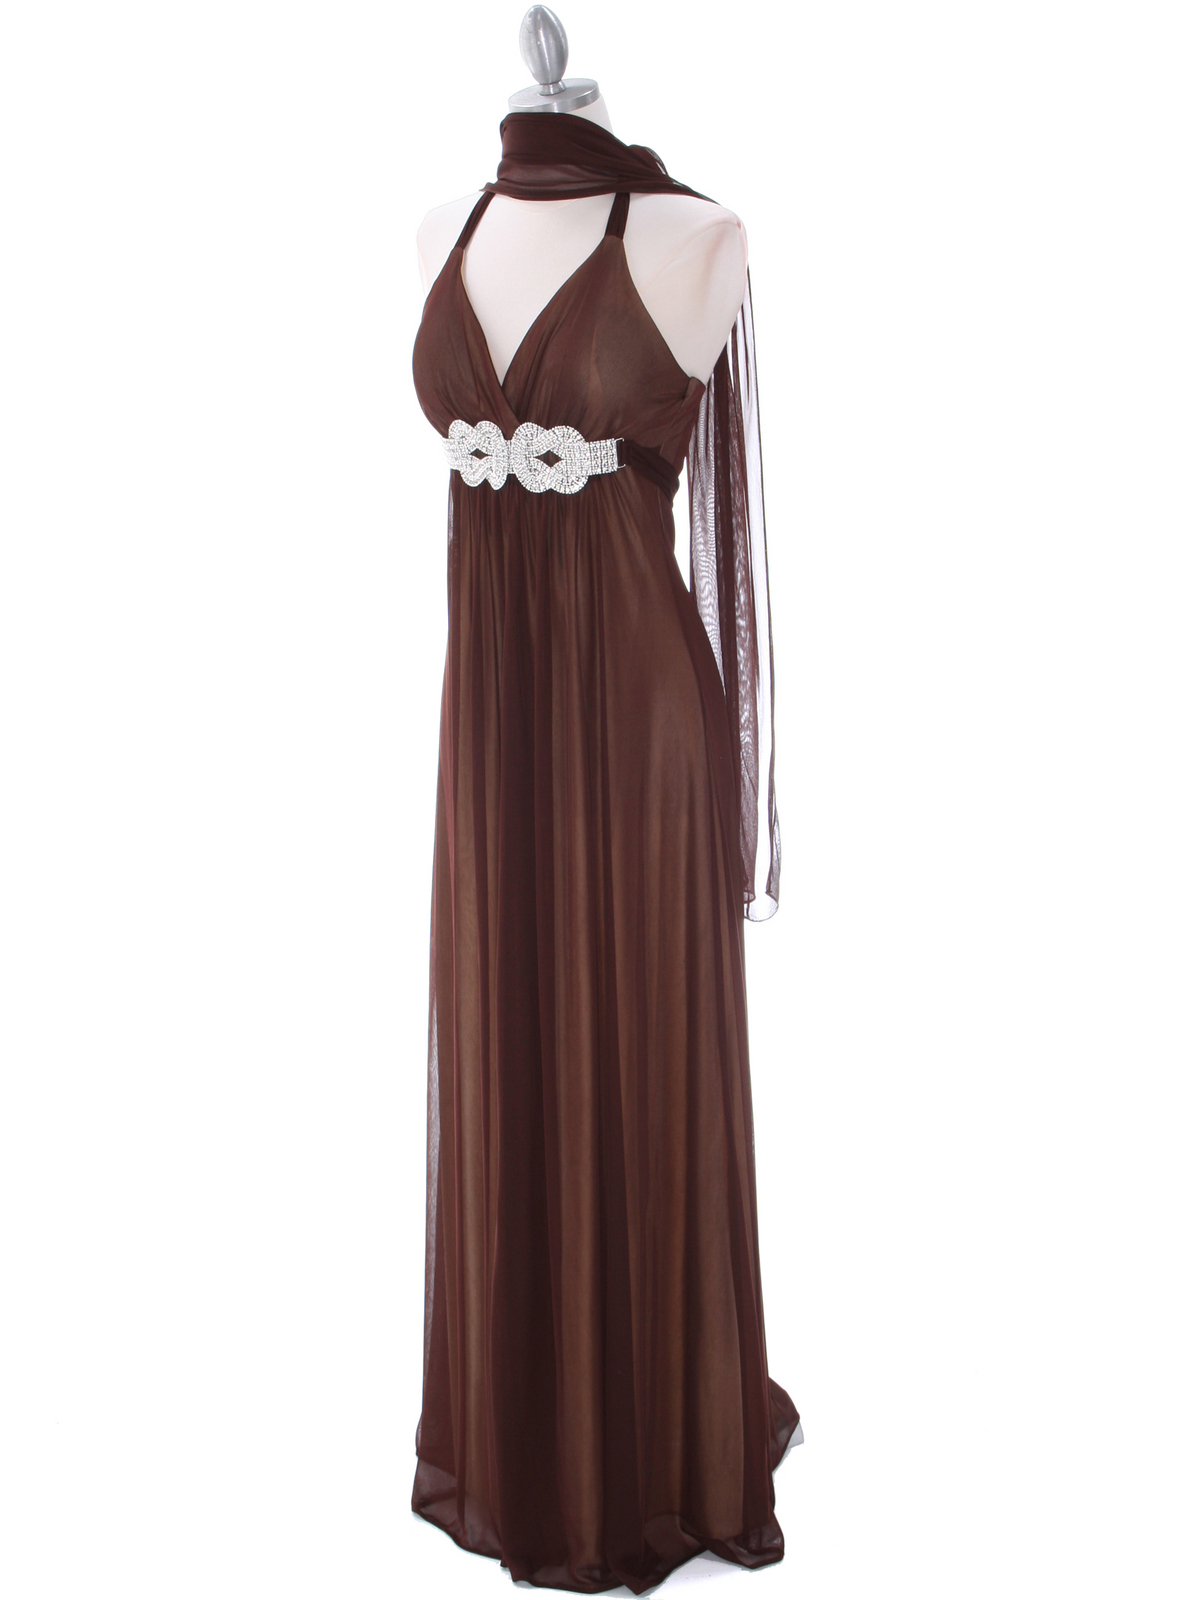 1333 BrownGold Evening Dress - Brown Gold, Alt View Medium